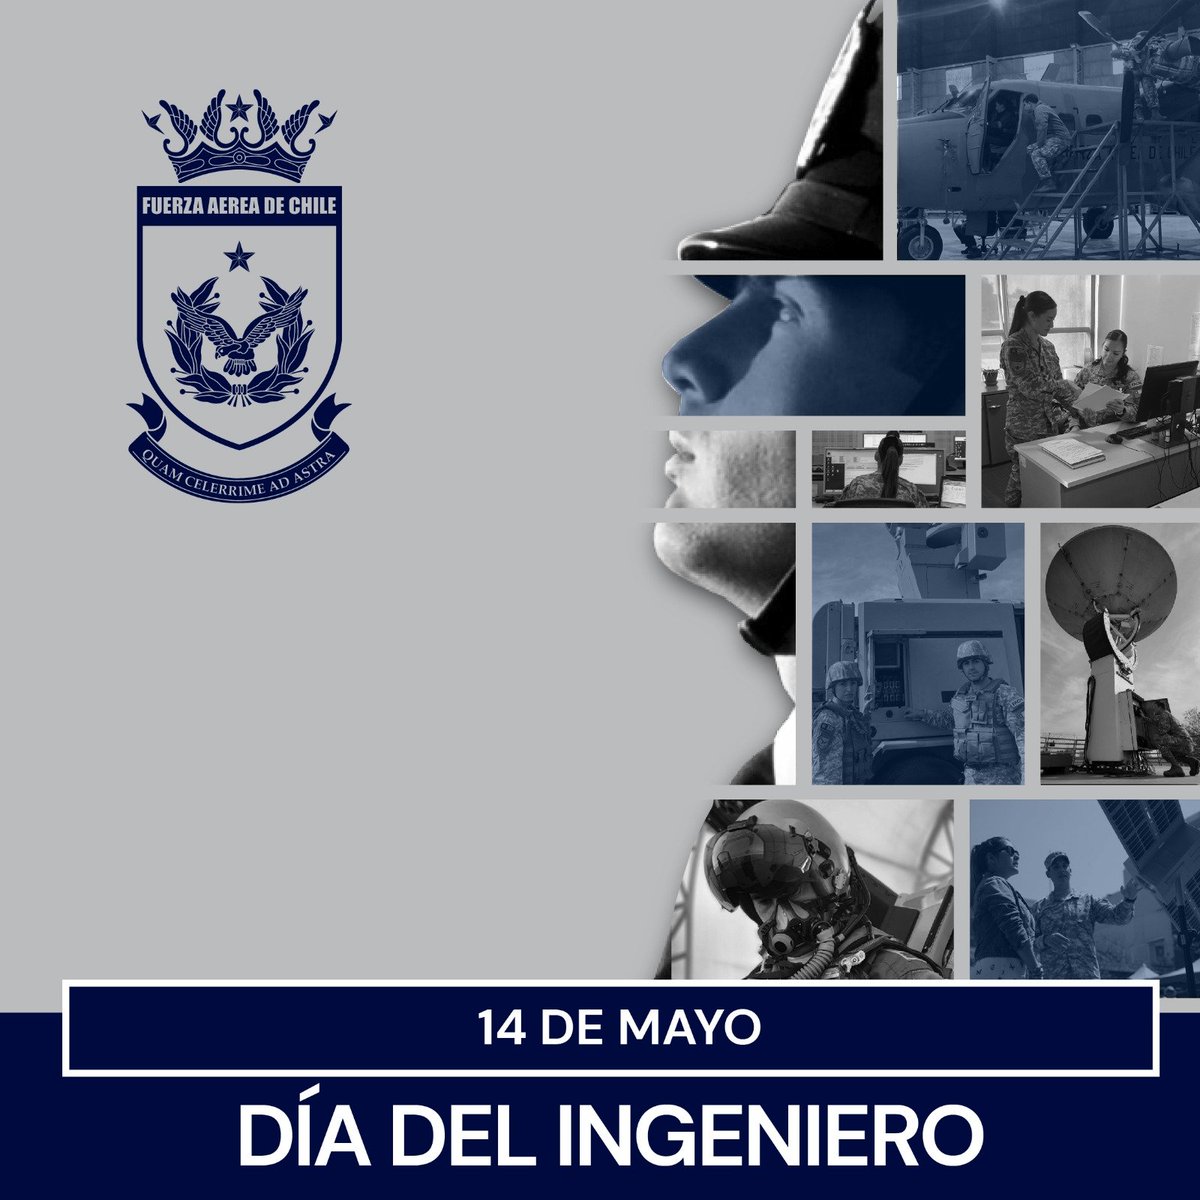 En el #DíadelIngeniero, saludamos a nuestros Oficiales, Suboficiales y Personal Civil, Ingenieras e Ingenieros que, con su profesión y conocimientos contribuyen en su misión a la Fuerza Aérea y a Chile. #AeronáuticaChilena #FACH